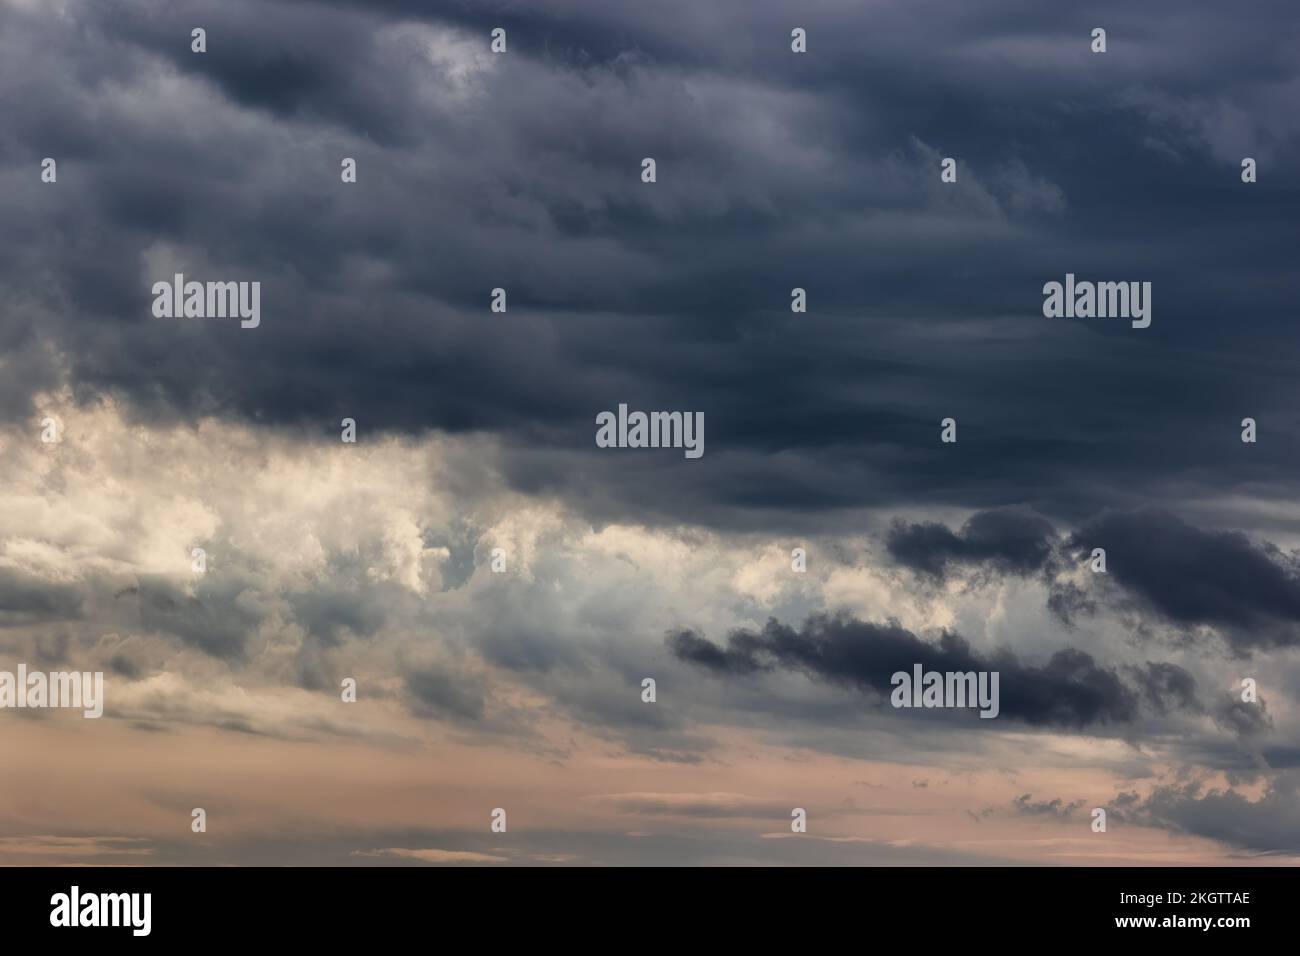 Am Blue Ridge Parkway hängen wütende Wolken schwer am Himmel. Stockfoto